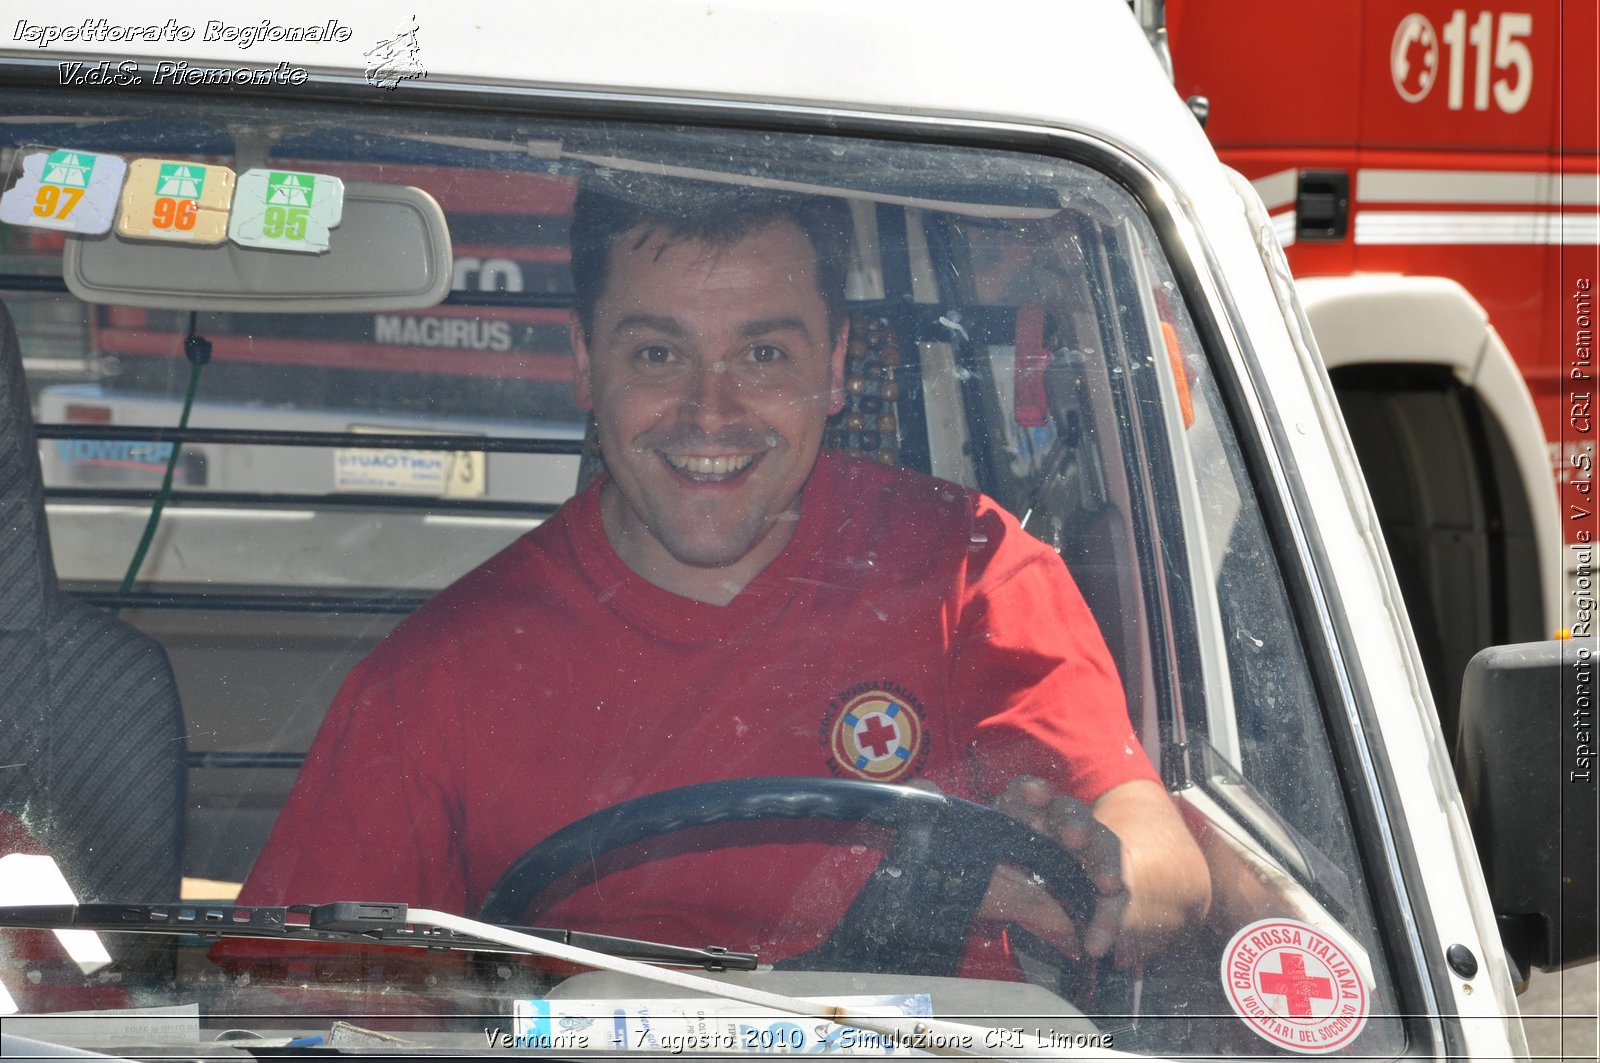 Vernante  - 7 agosto 2010 - Simulazione CRI Limone -  Croce Rossa Italiana - Ispettorato Regionale Volontari del Soccorso Piemonte